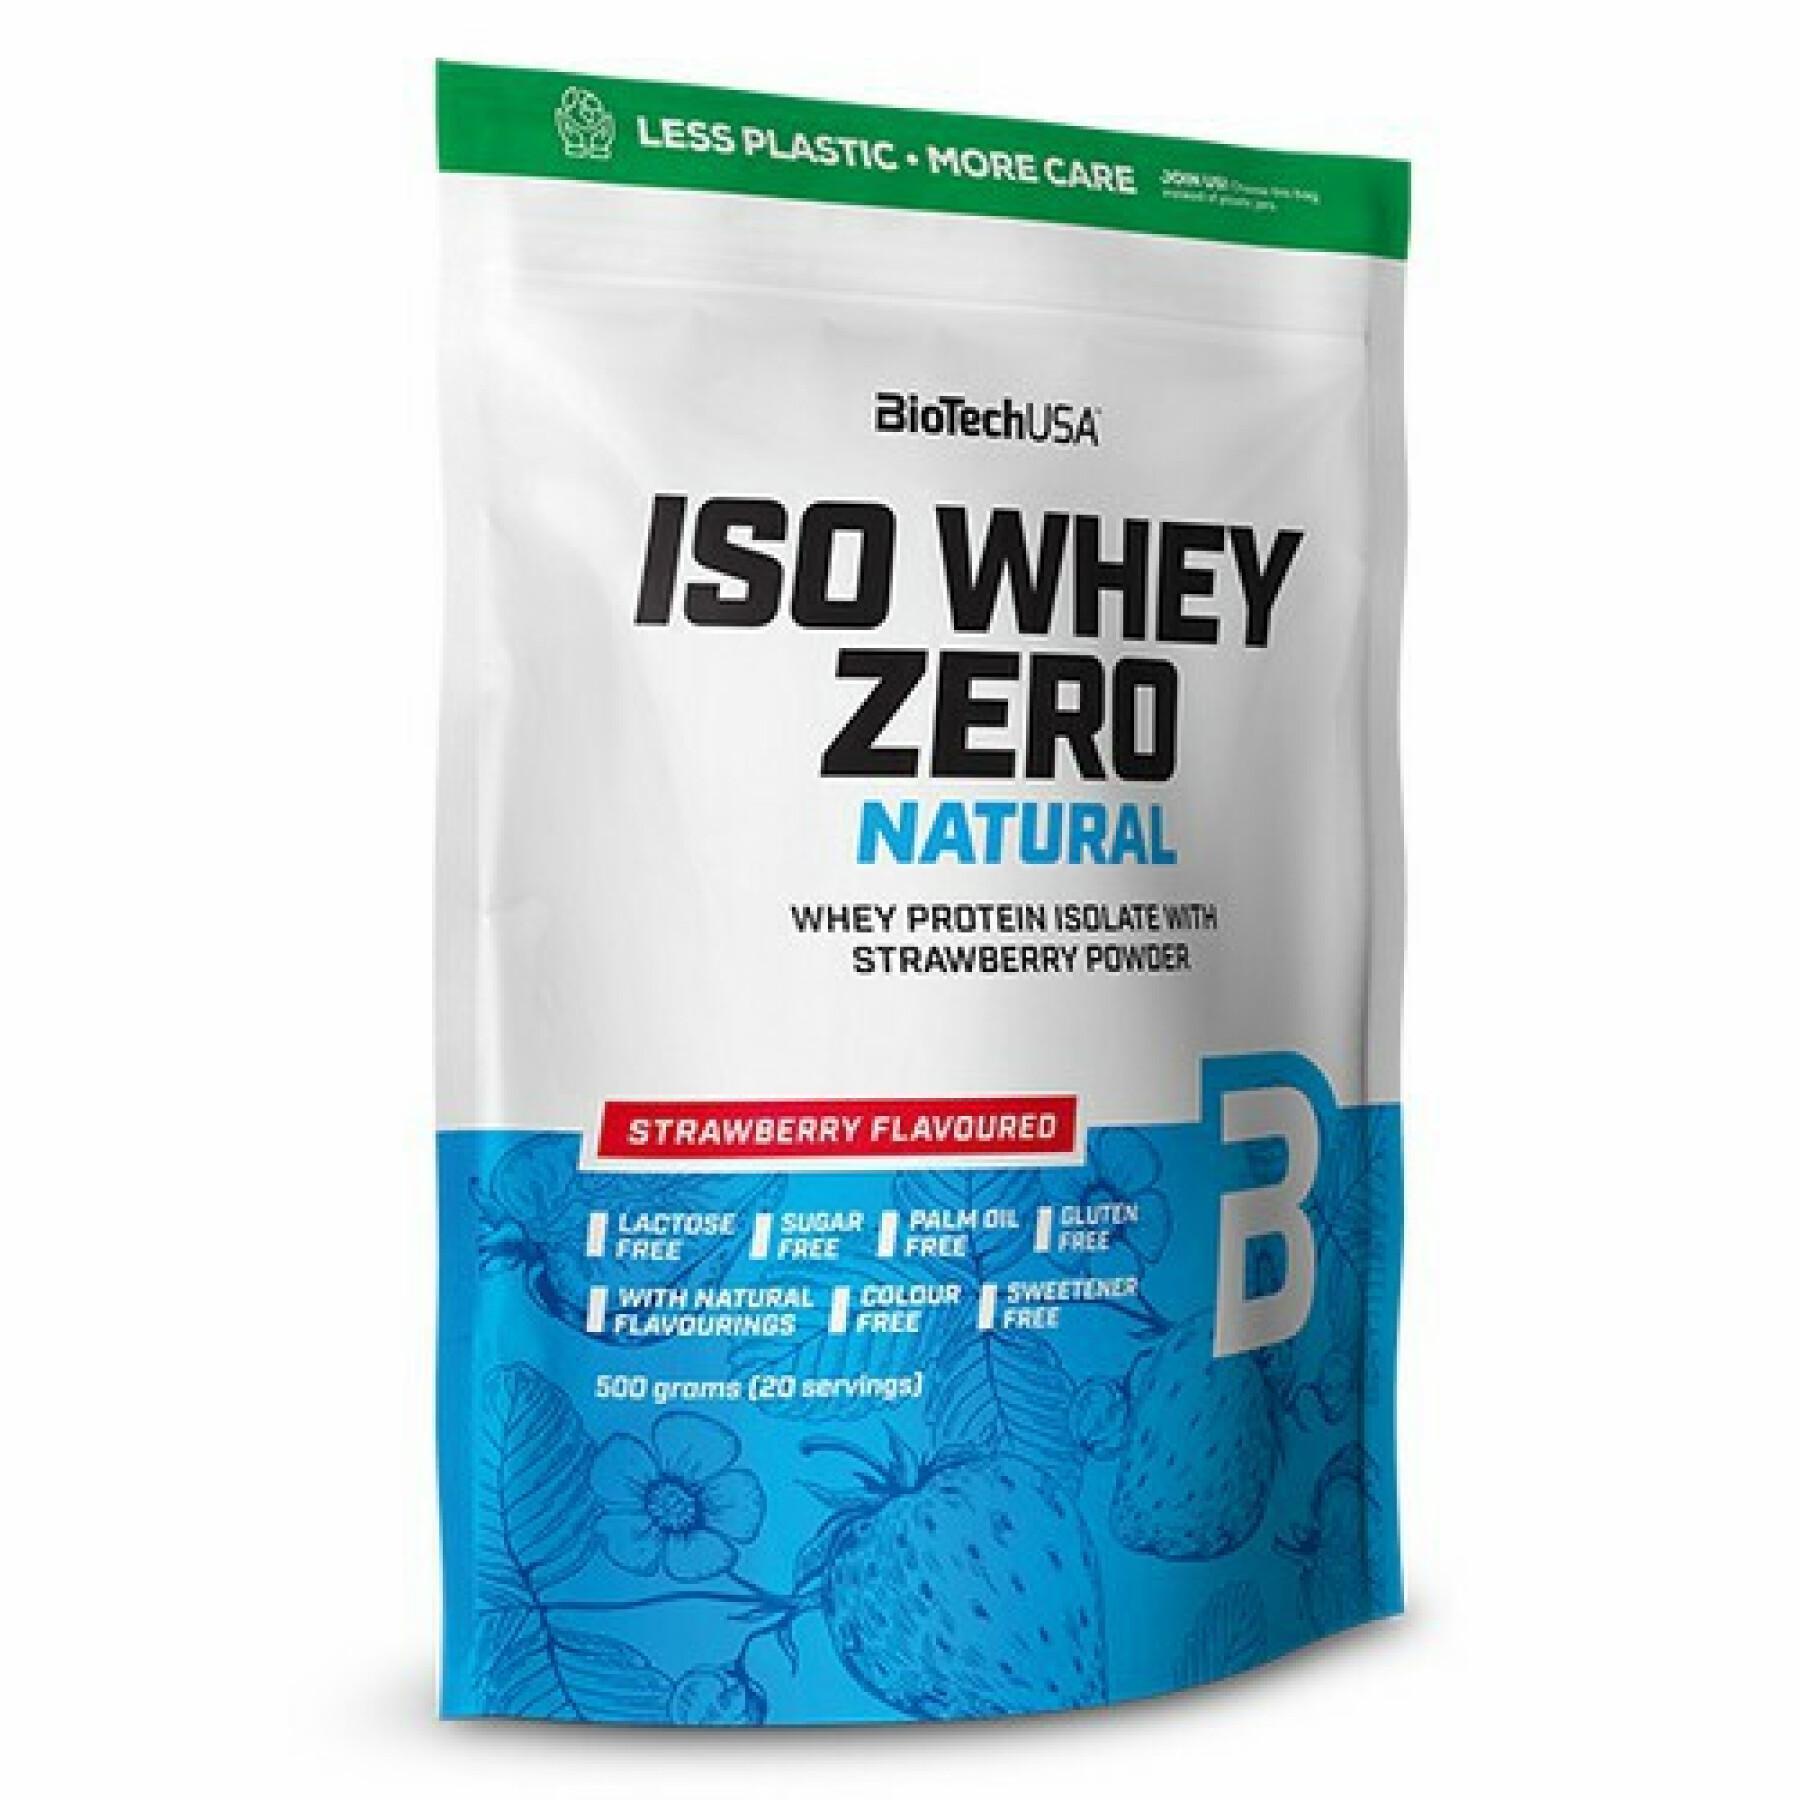 Paquete de 10 bolsas de proteínas Biotech USA iso whey zero lactose free - Fraise - 500g